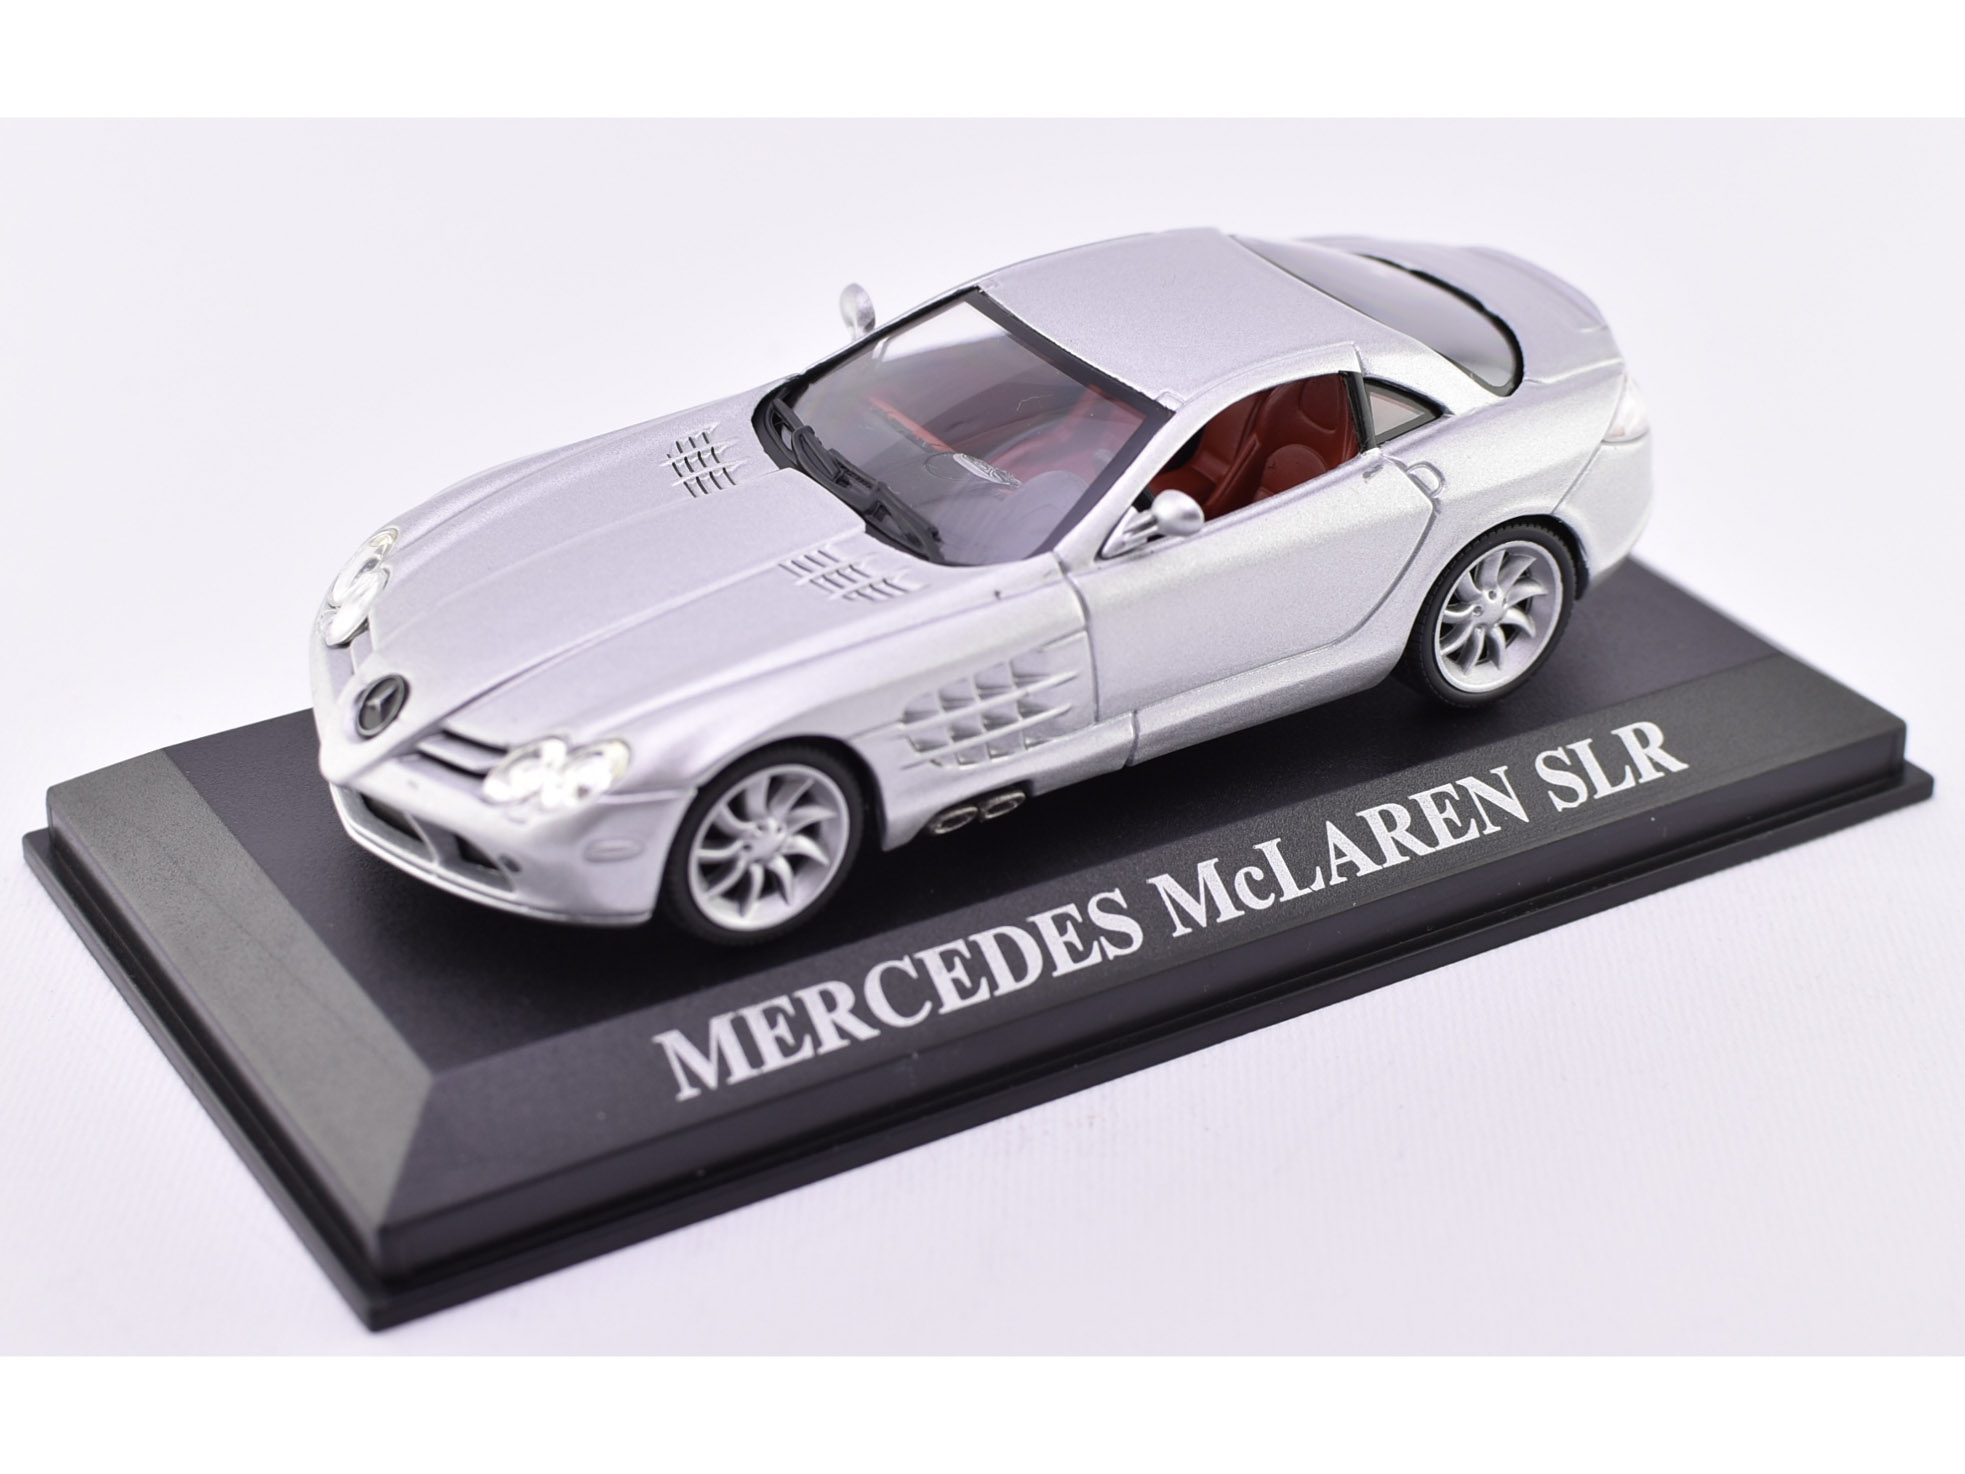 Mercedes McLaren SLR